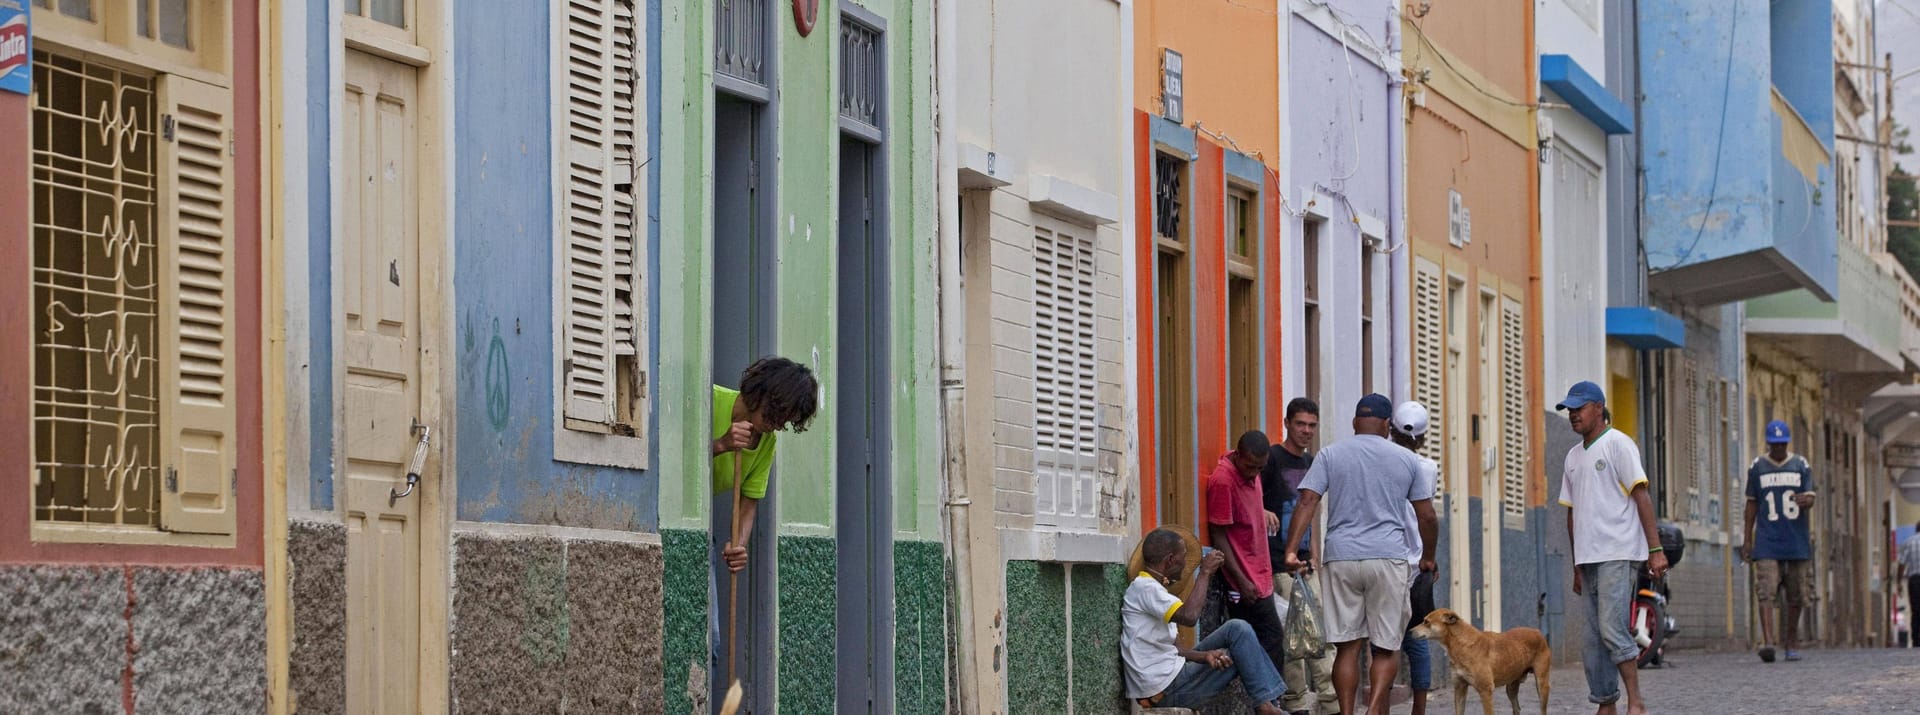 Die Hafenstadt Mindelo gilt als kultureller Treffpunkt der Kapverdischen Inseln.